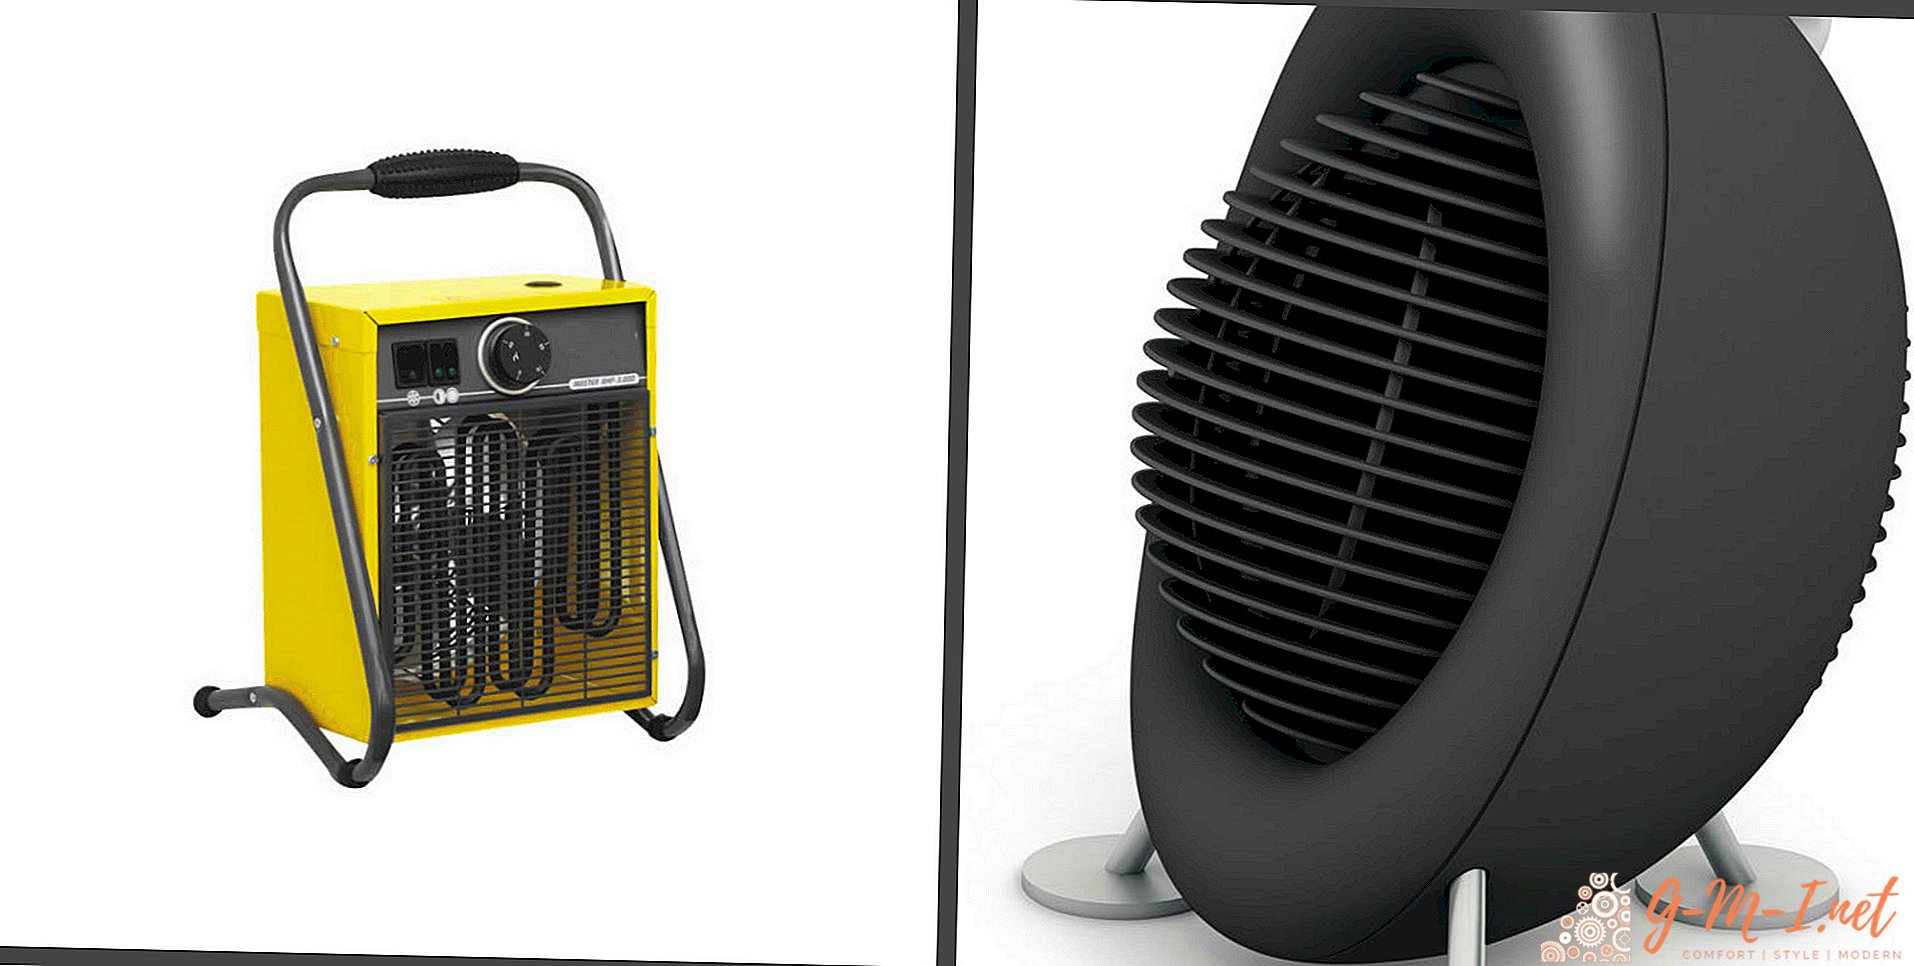 ¿Qué es mejor calentador de ventilador o pistola de calor?